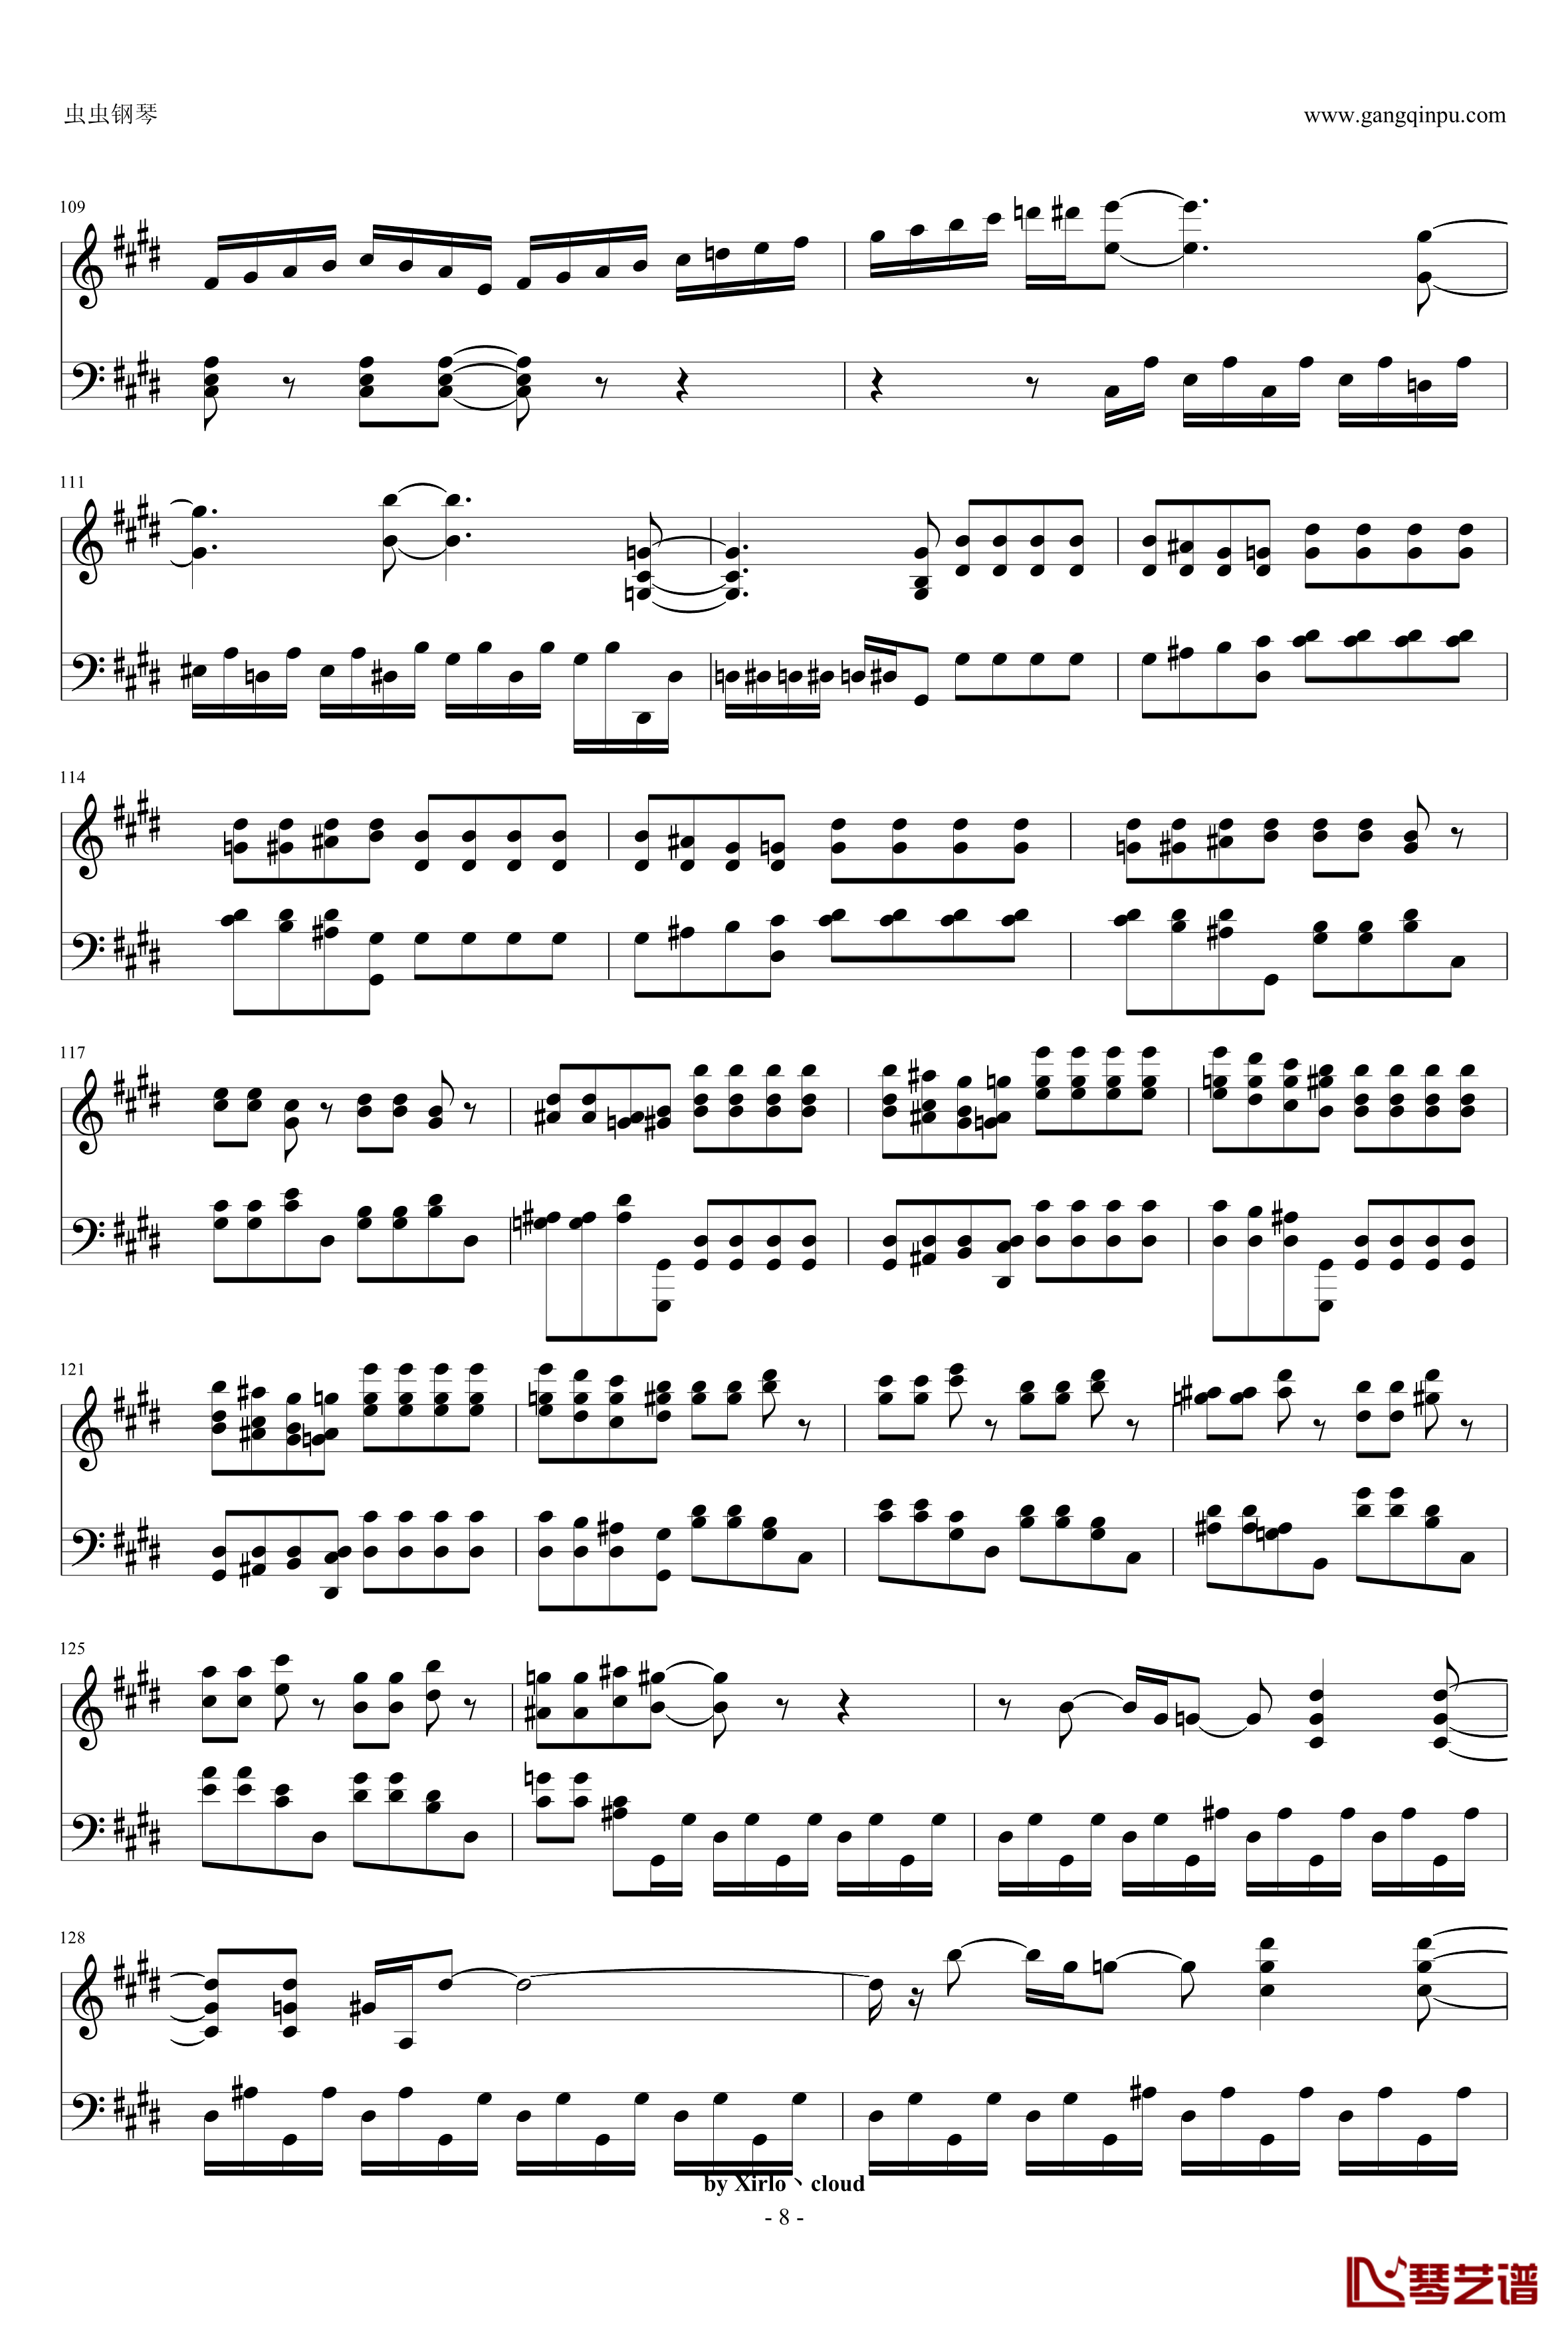 月光奏鸣曲钢琴谱-改编版-贝多芬-beethoven8